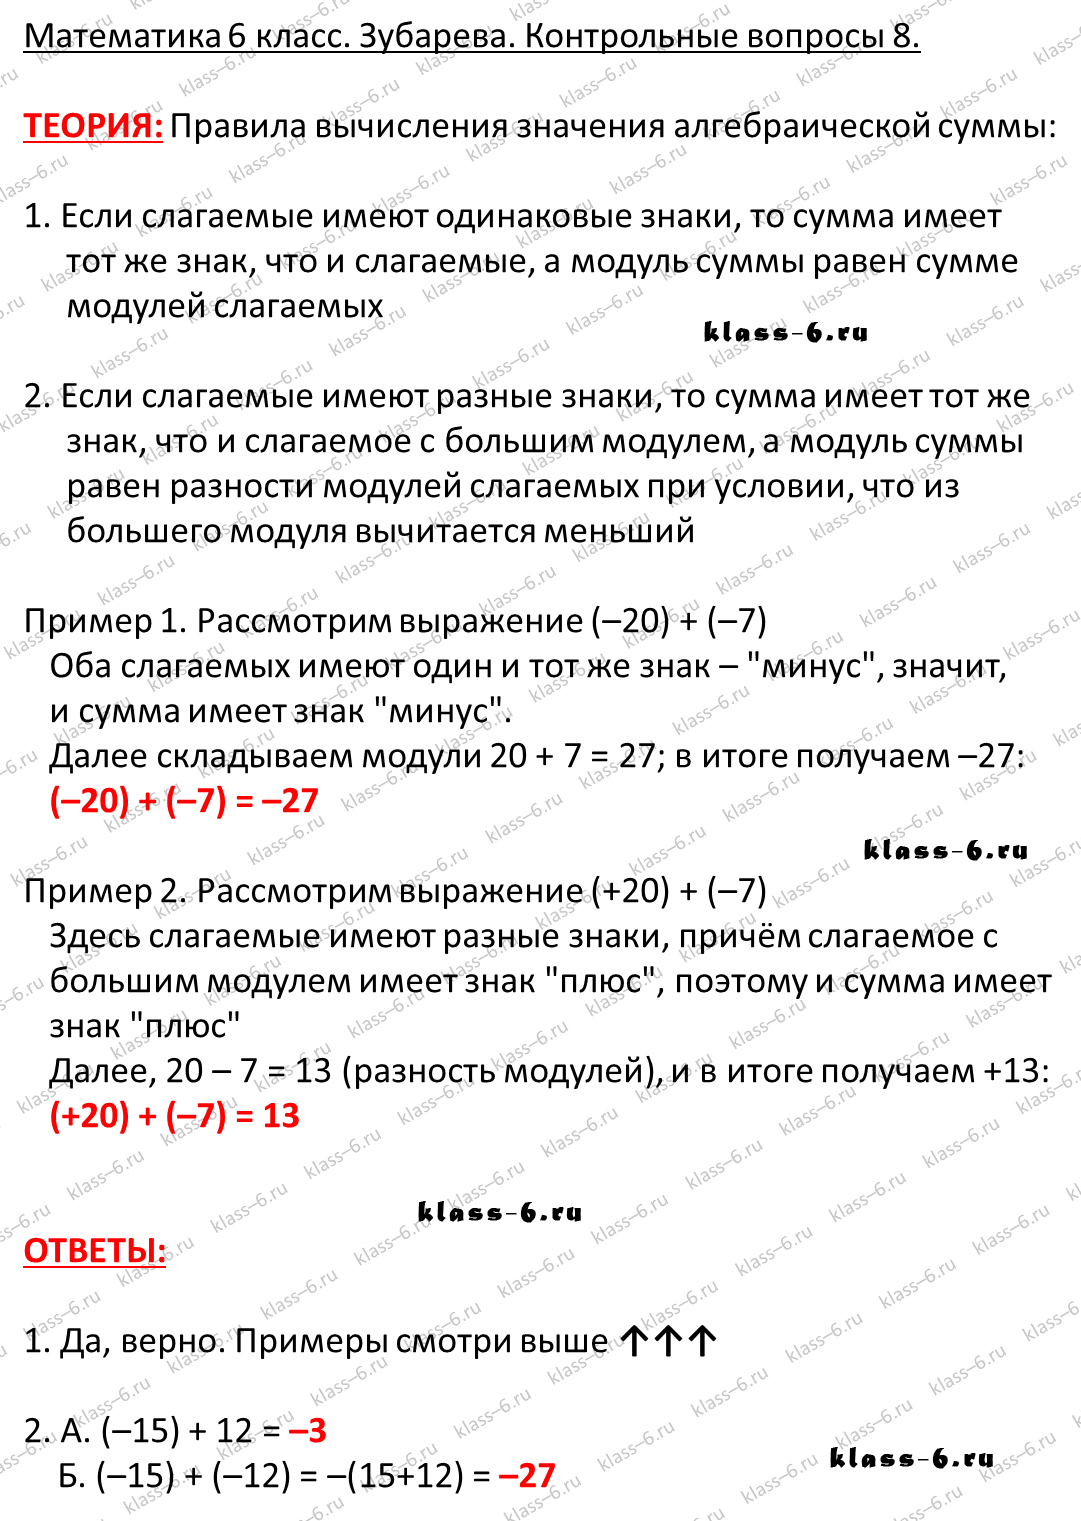 Контрольные вопросы и задания русский язык 6 класс